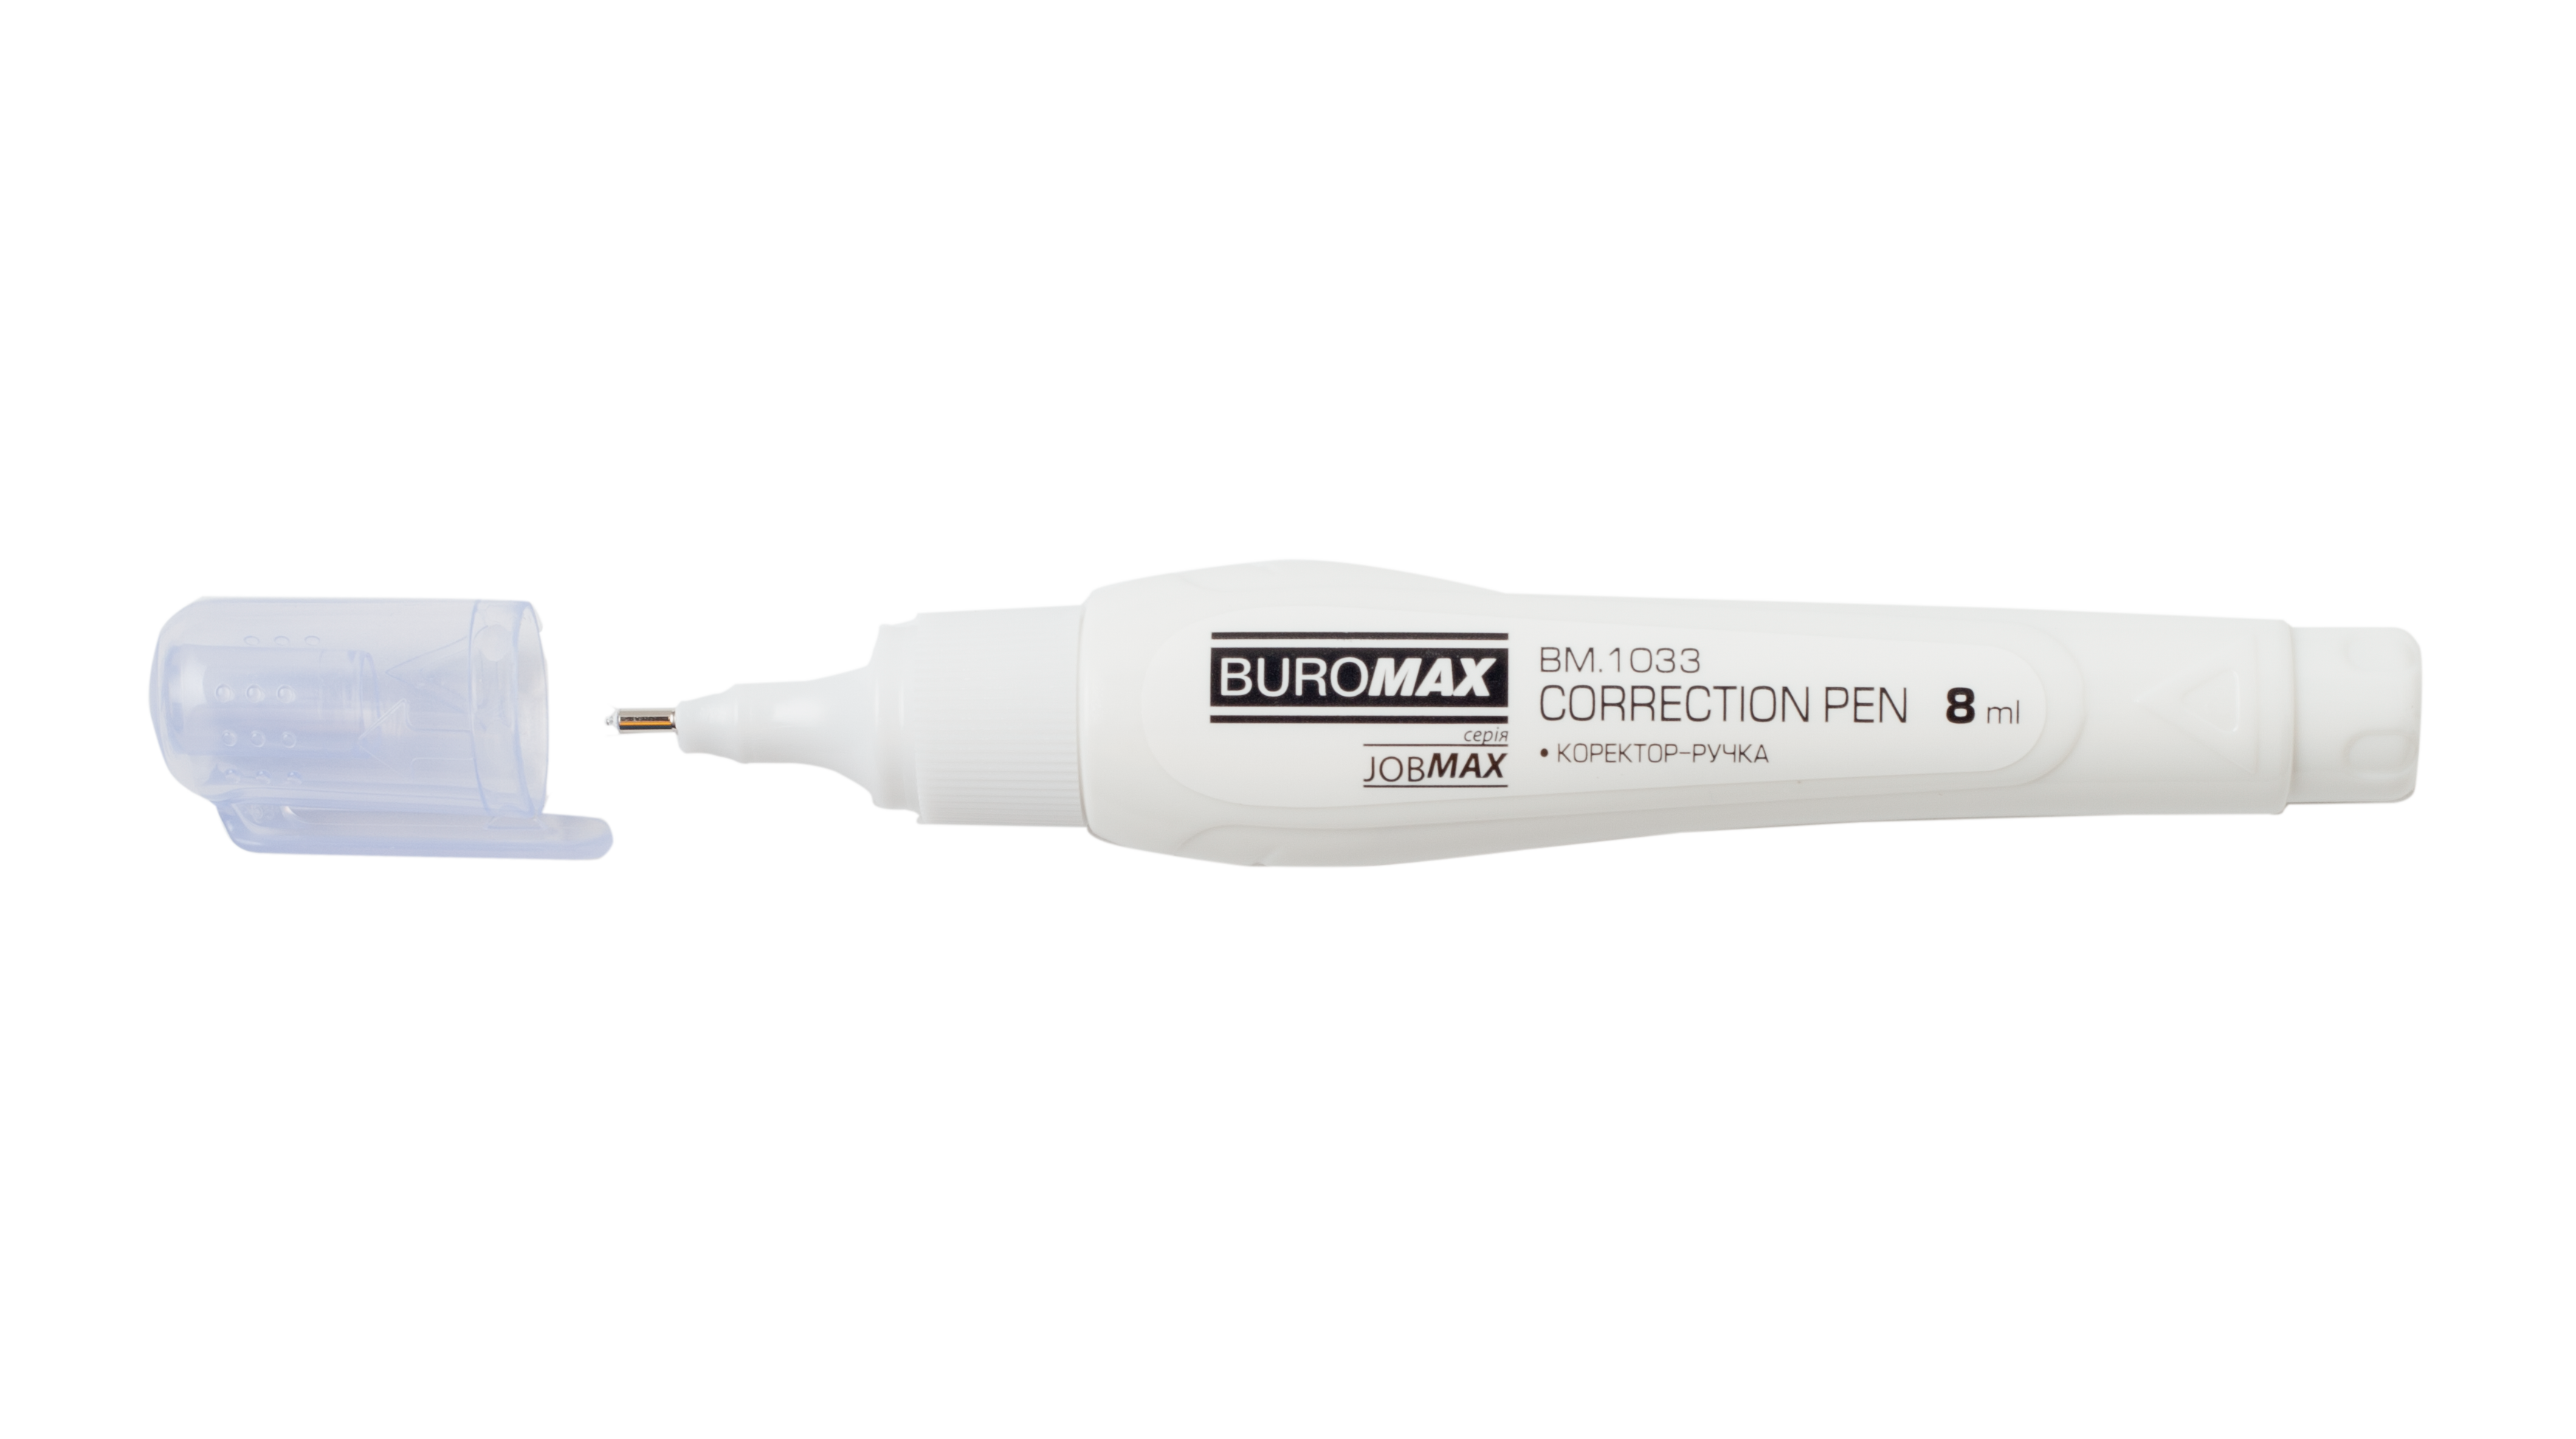 Коректор-ручка Buromax Jobmax, 8 мл (BM.1033) - фото 2